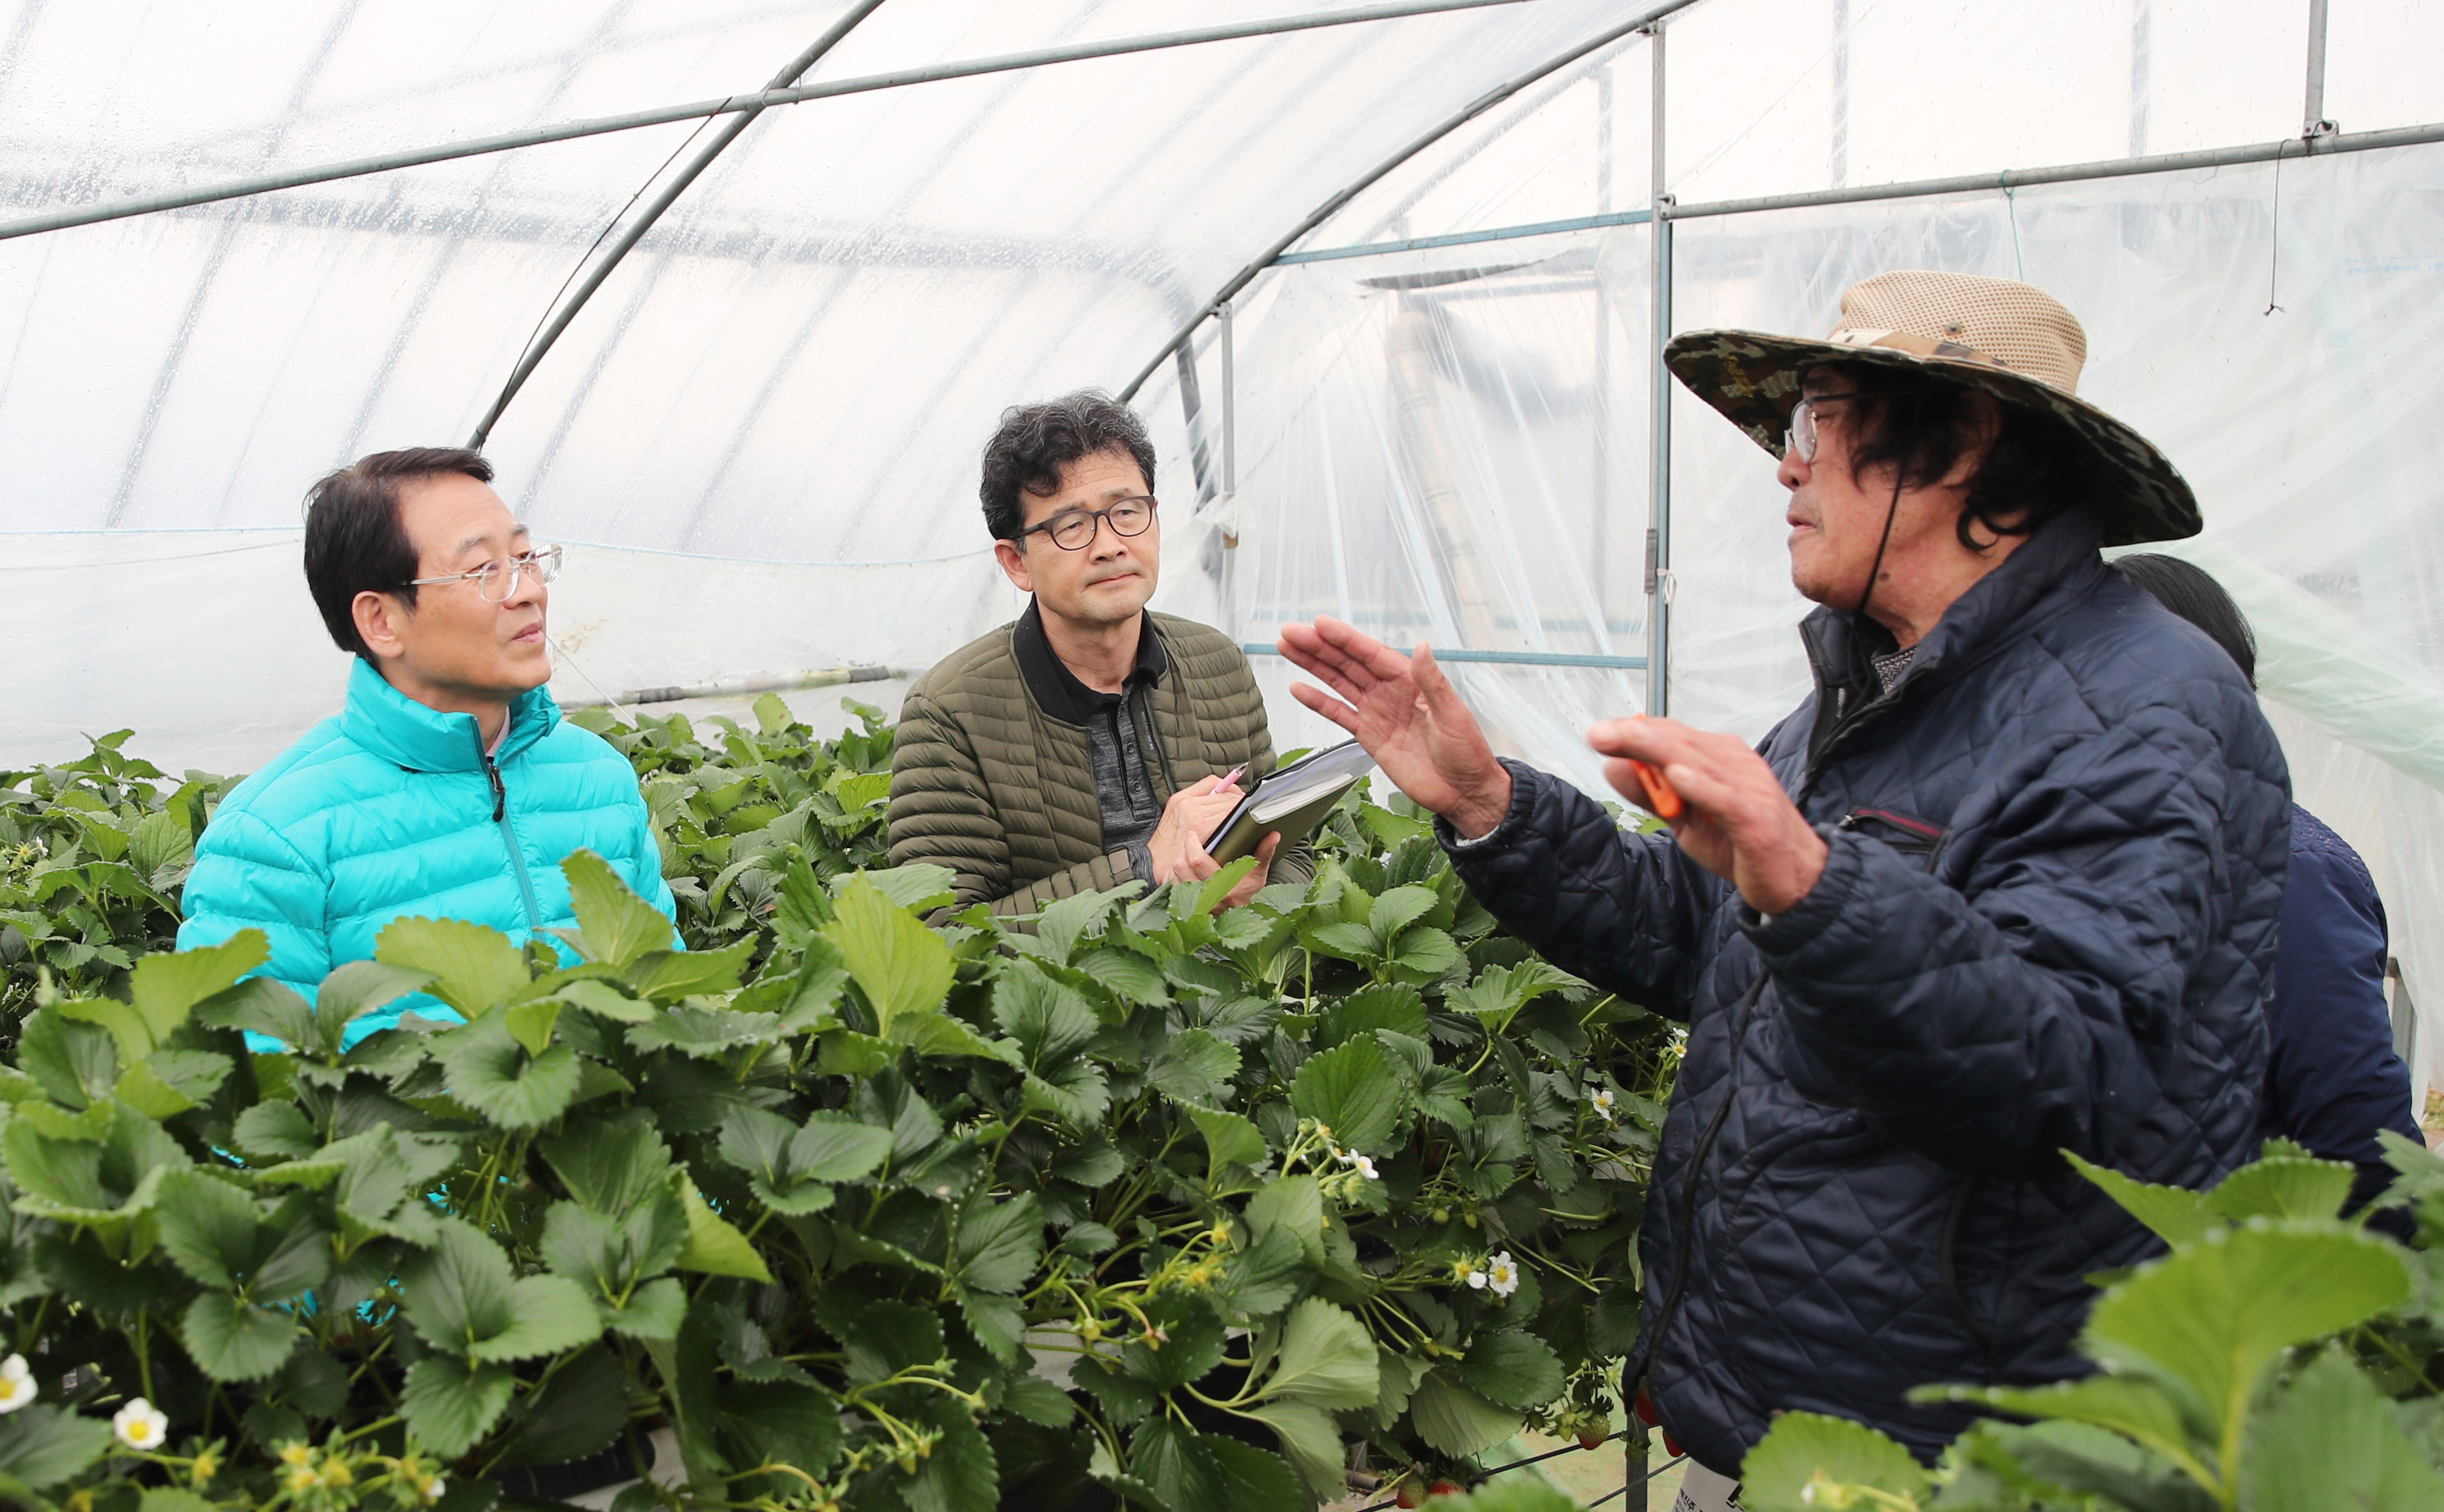 딸기 농가 일부 도난···강진군, 신속대처로 피해 최소화